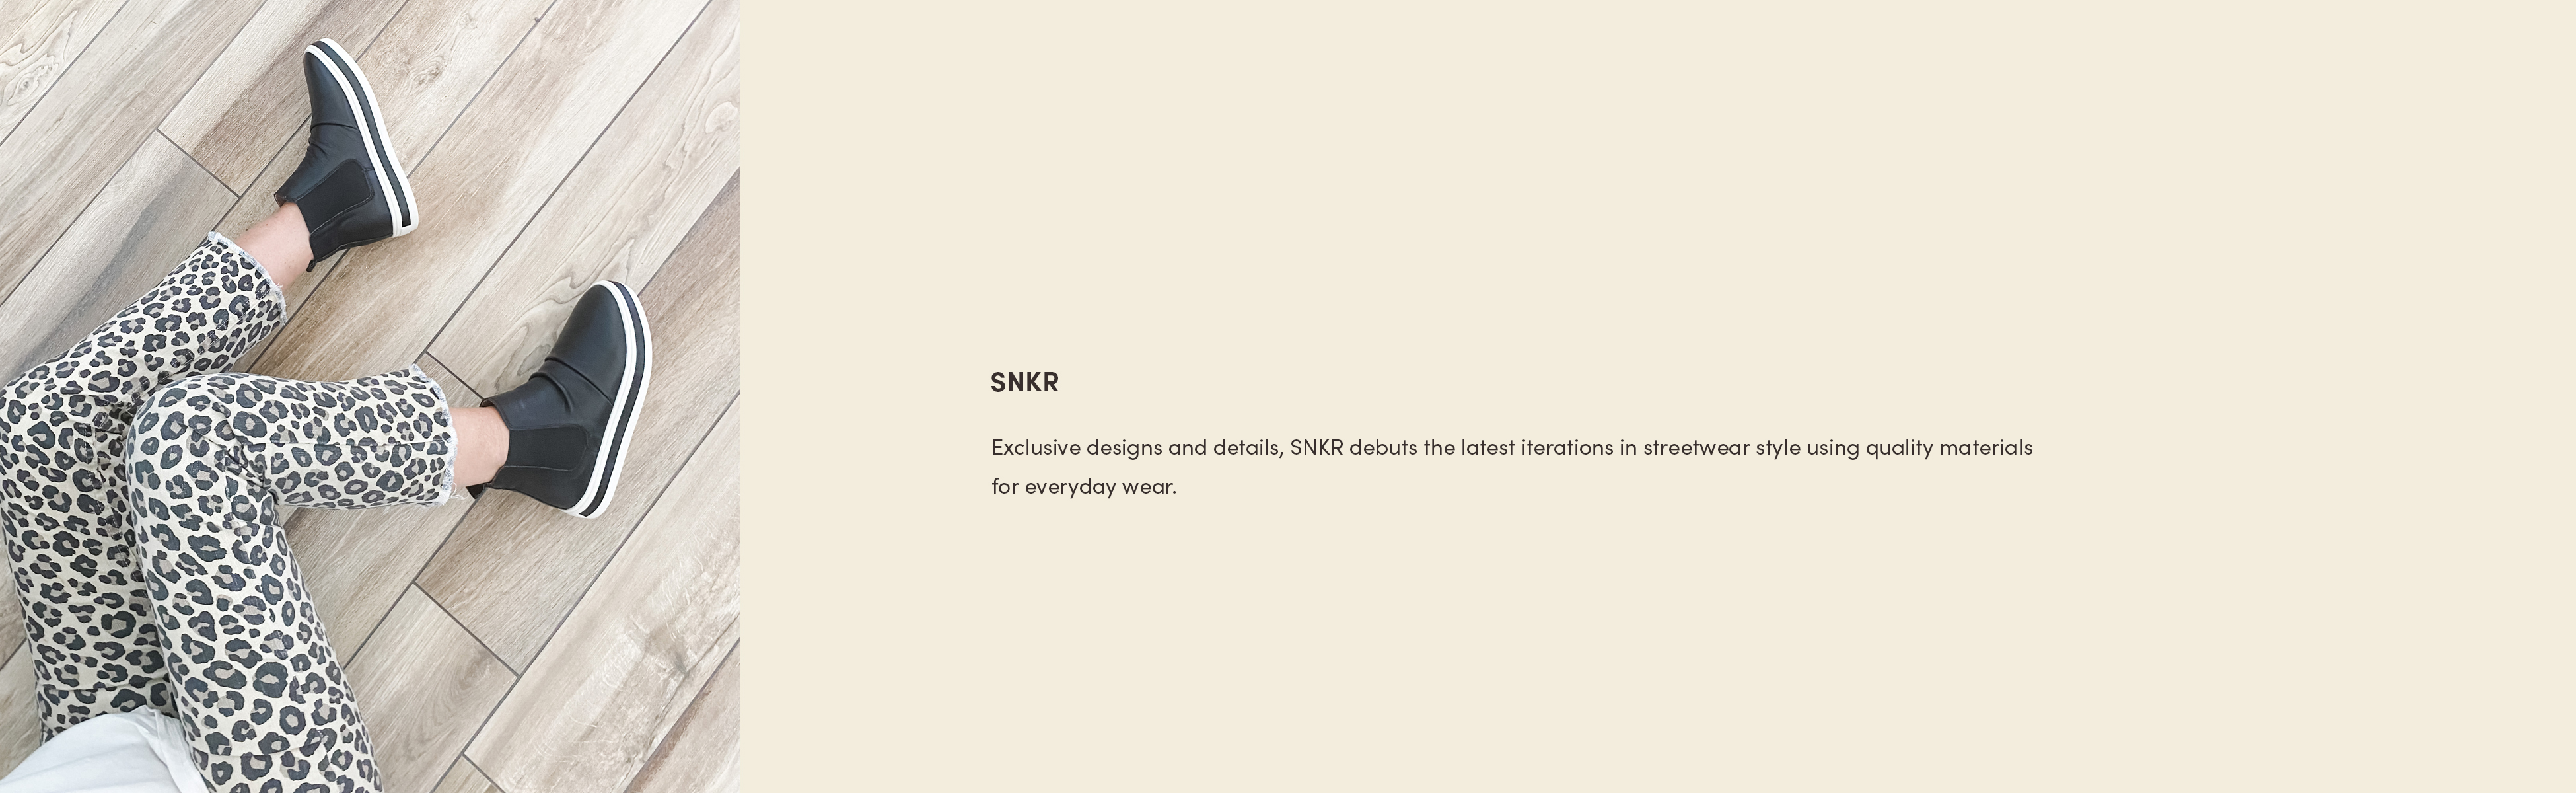 SNKR_banner